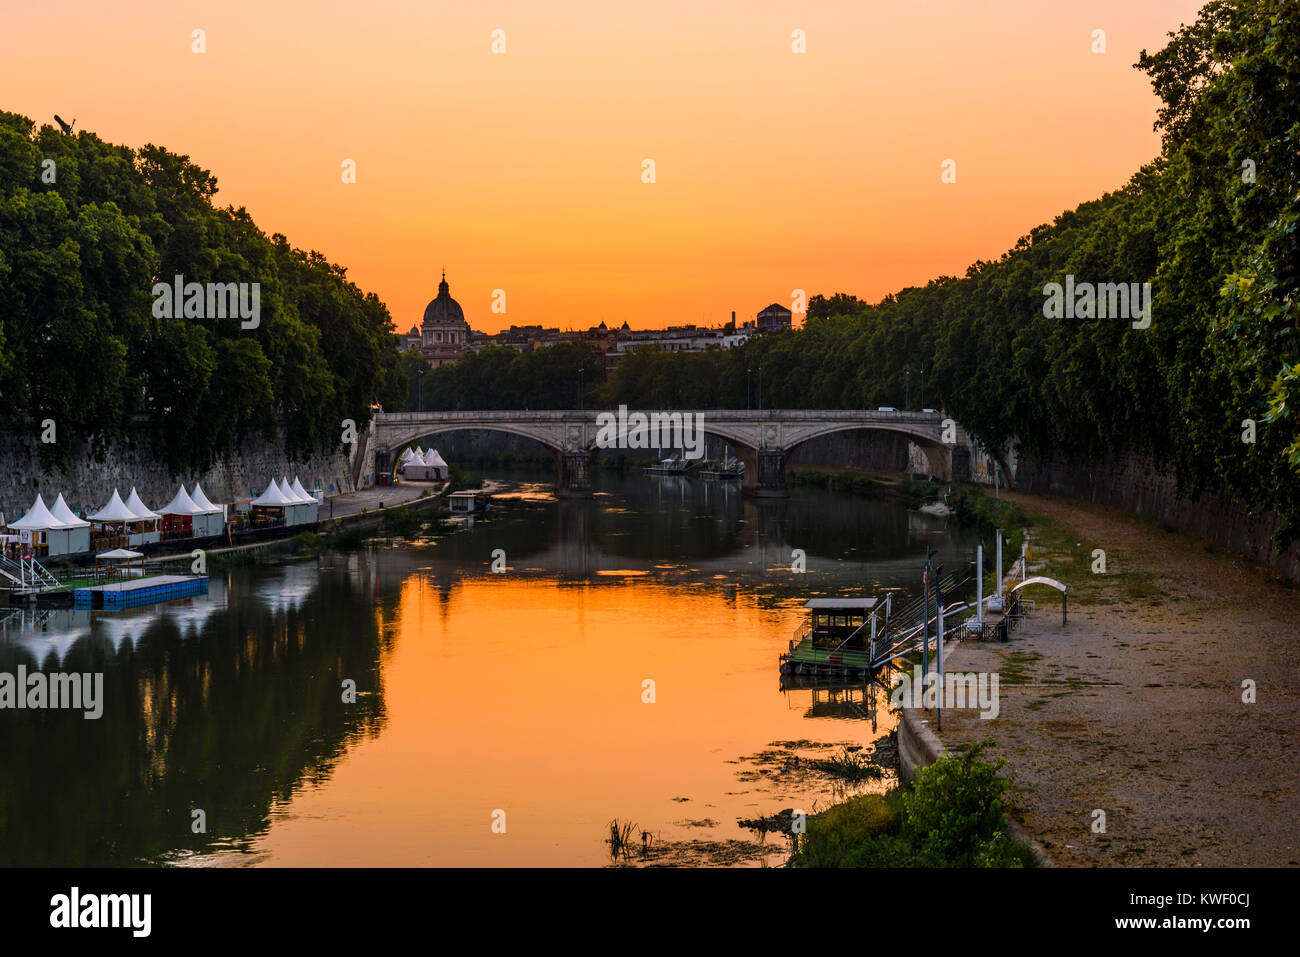 Fiume Tevere al tramonto, con Umberto I Bridge sullo sfondo, Roma, lazio, Italy Foto Stock